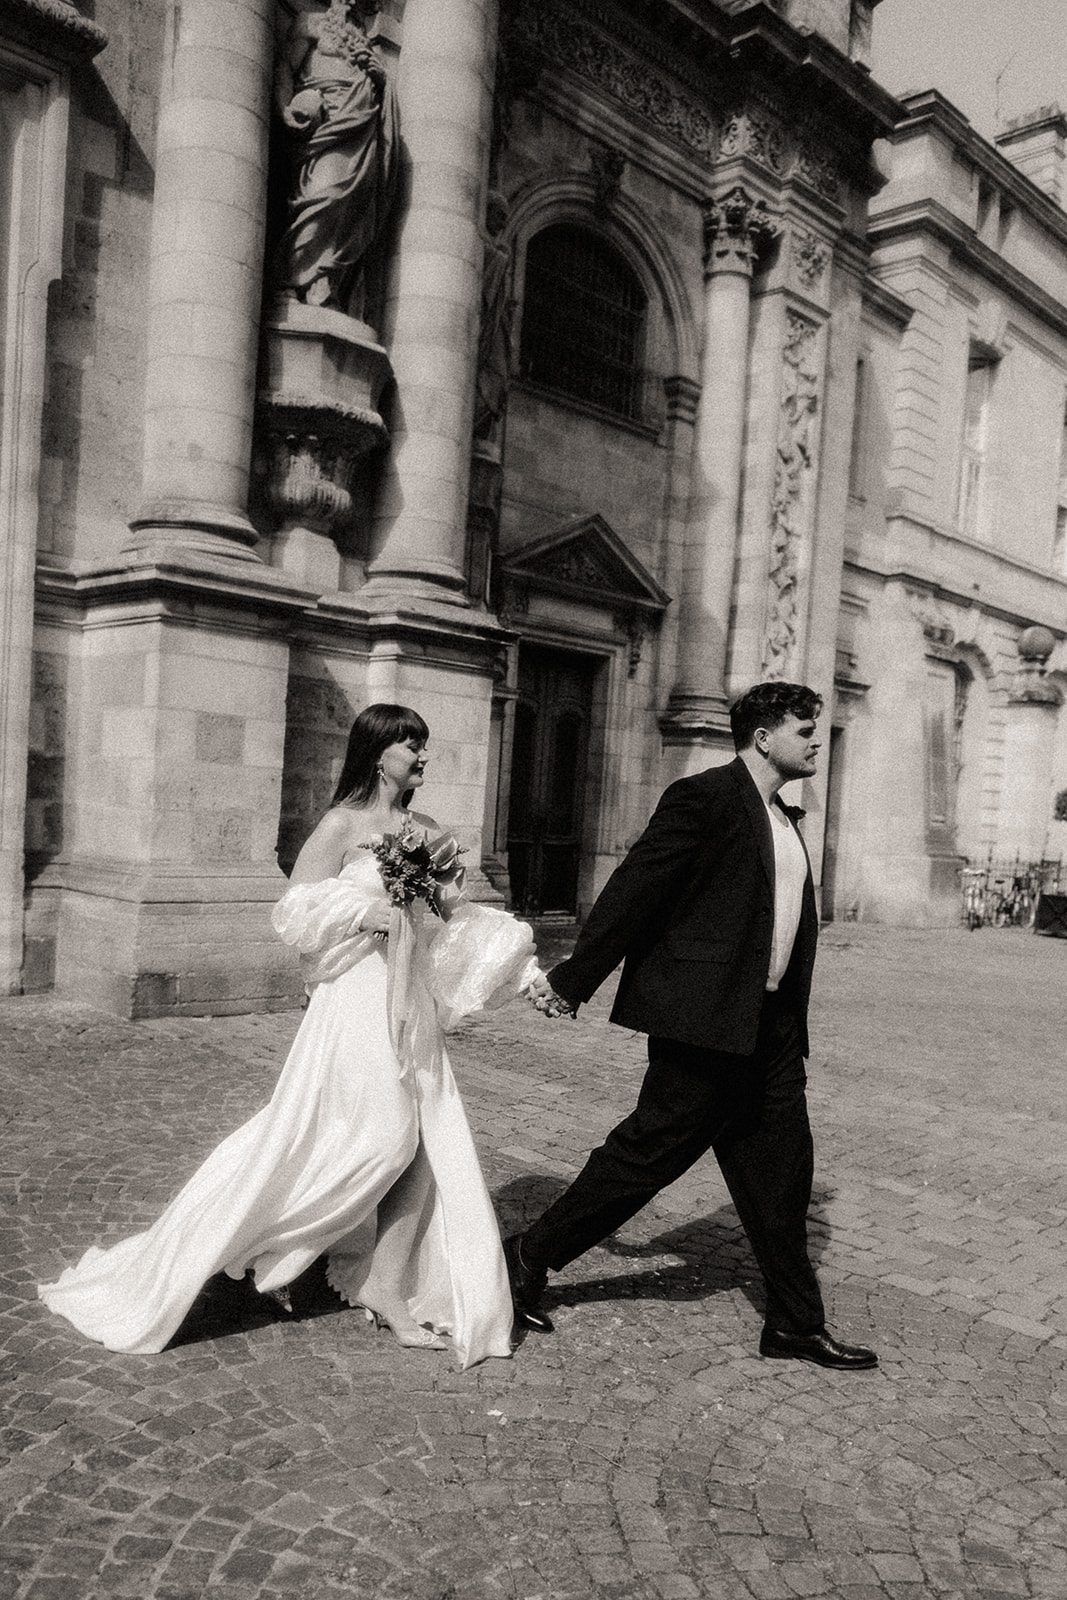 Un couple de mariés marchant dans la ville. La robe de la mariée vol au vent.